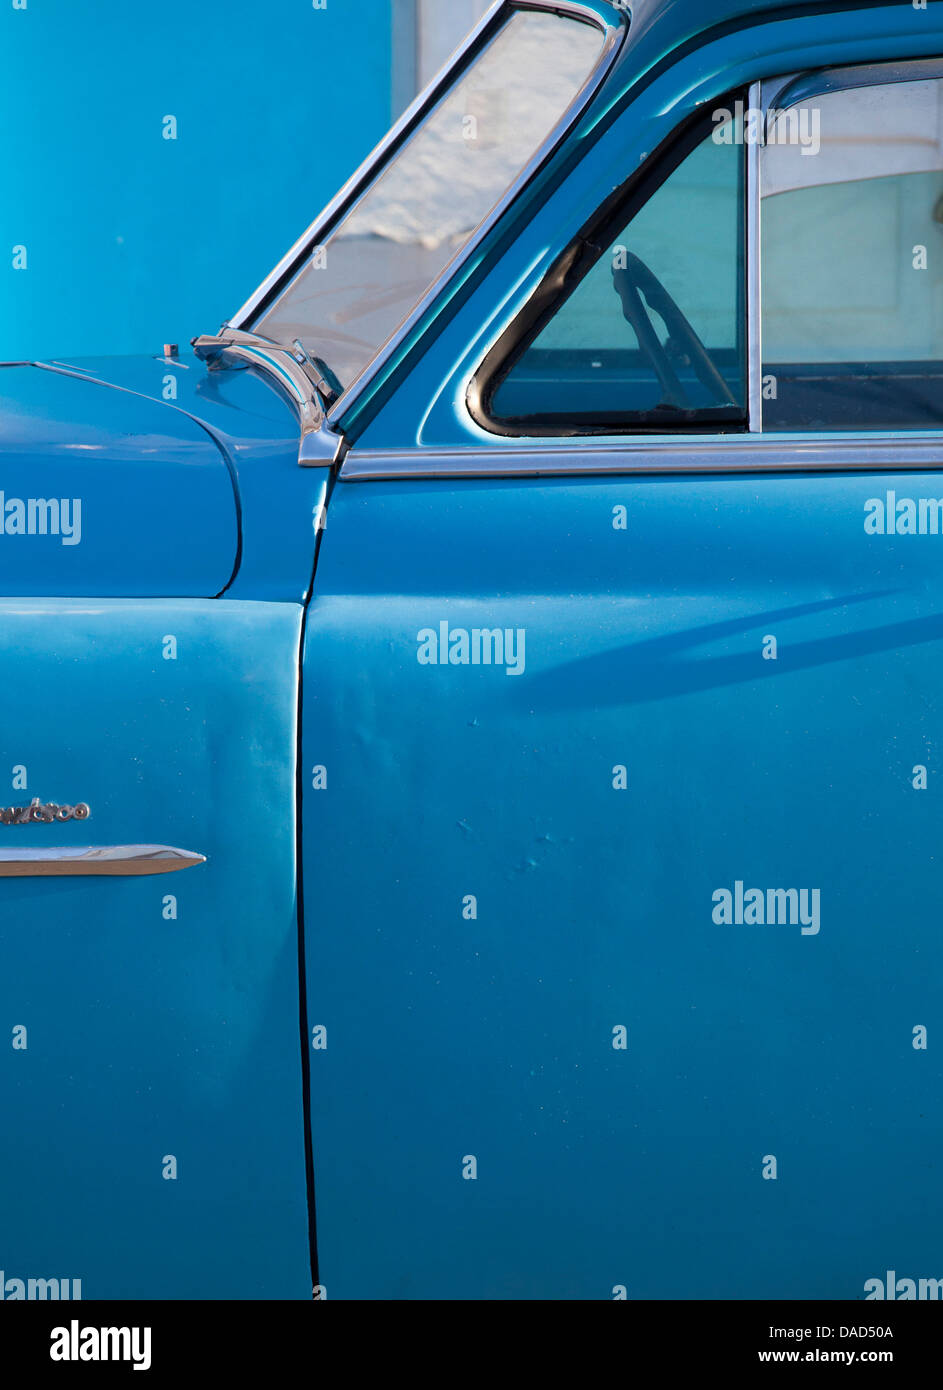 Dettaglio del blu vintage americano auto contro blu dipinti a muro, Cienfuegos, Cuba, West Indies, America Centrale Foto Stock